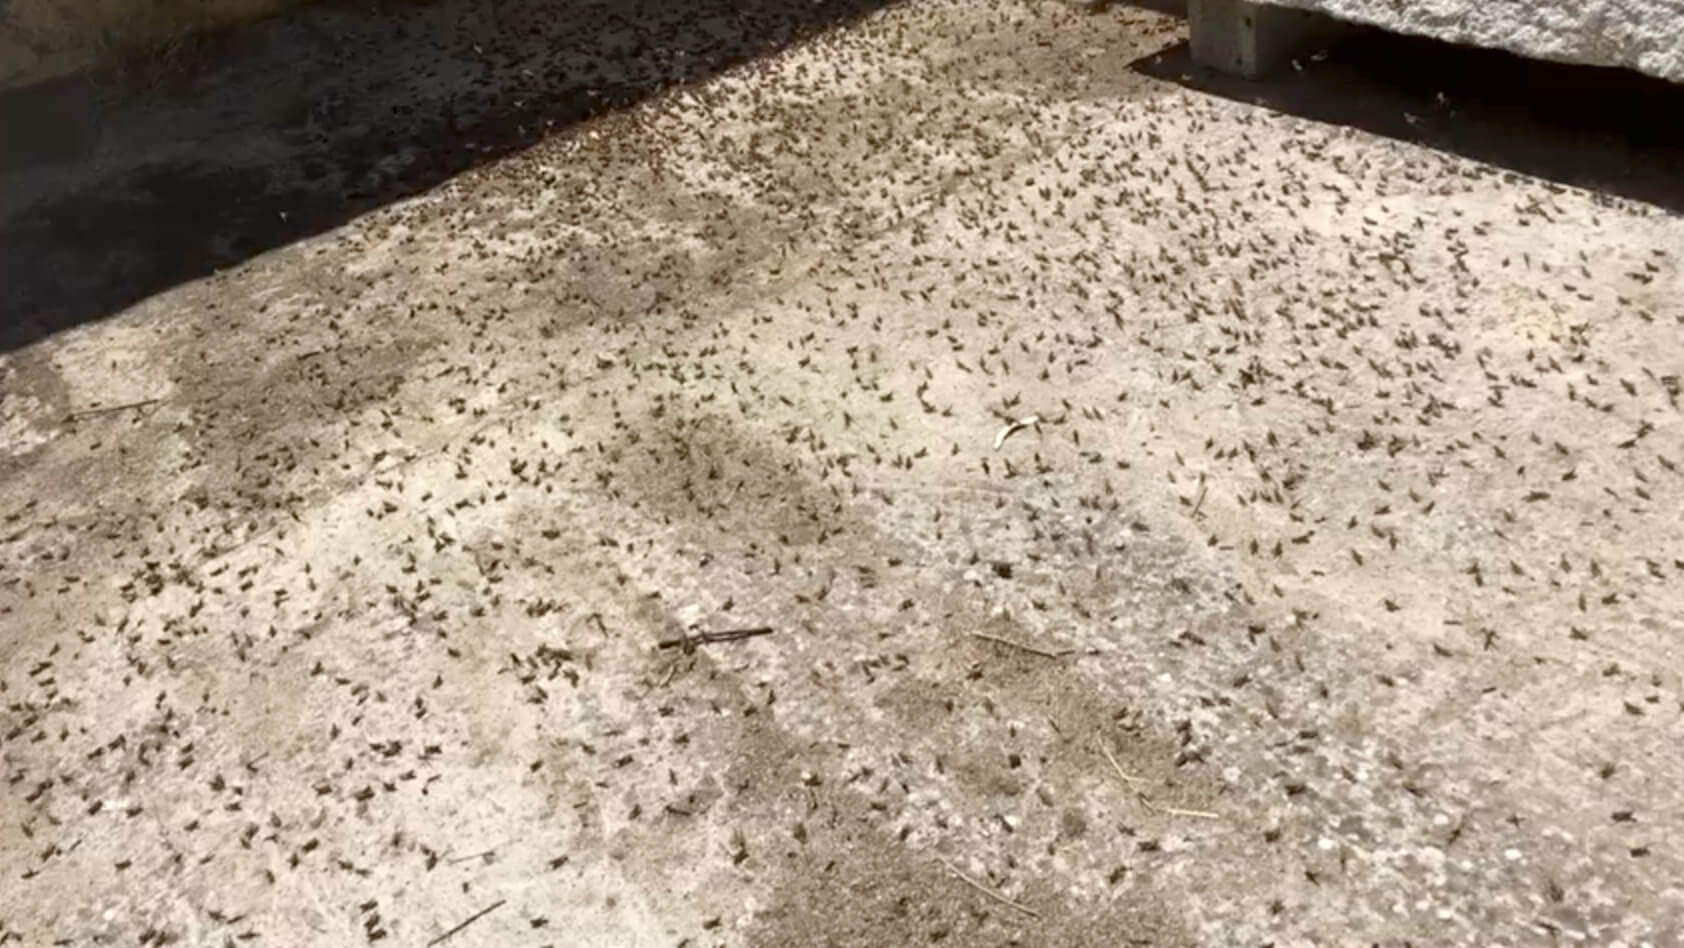 Επιδρομή εκατομμυρίων ακρίδων στη Σαρδηνία – Σε απόγνωση οι αγρότες [video, pics]